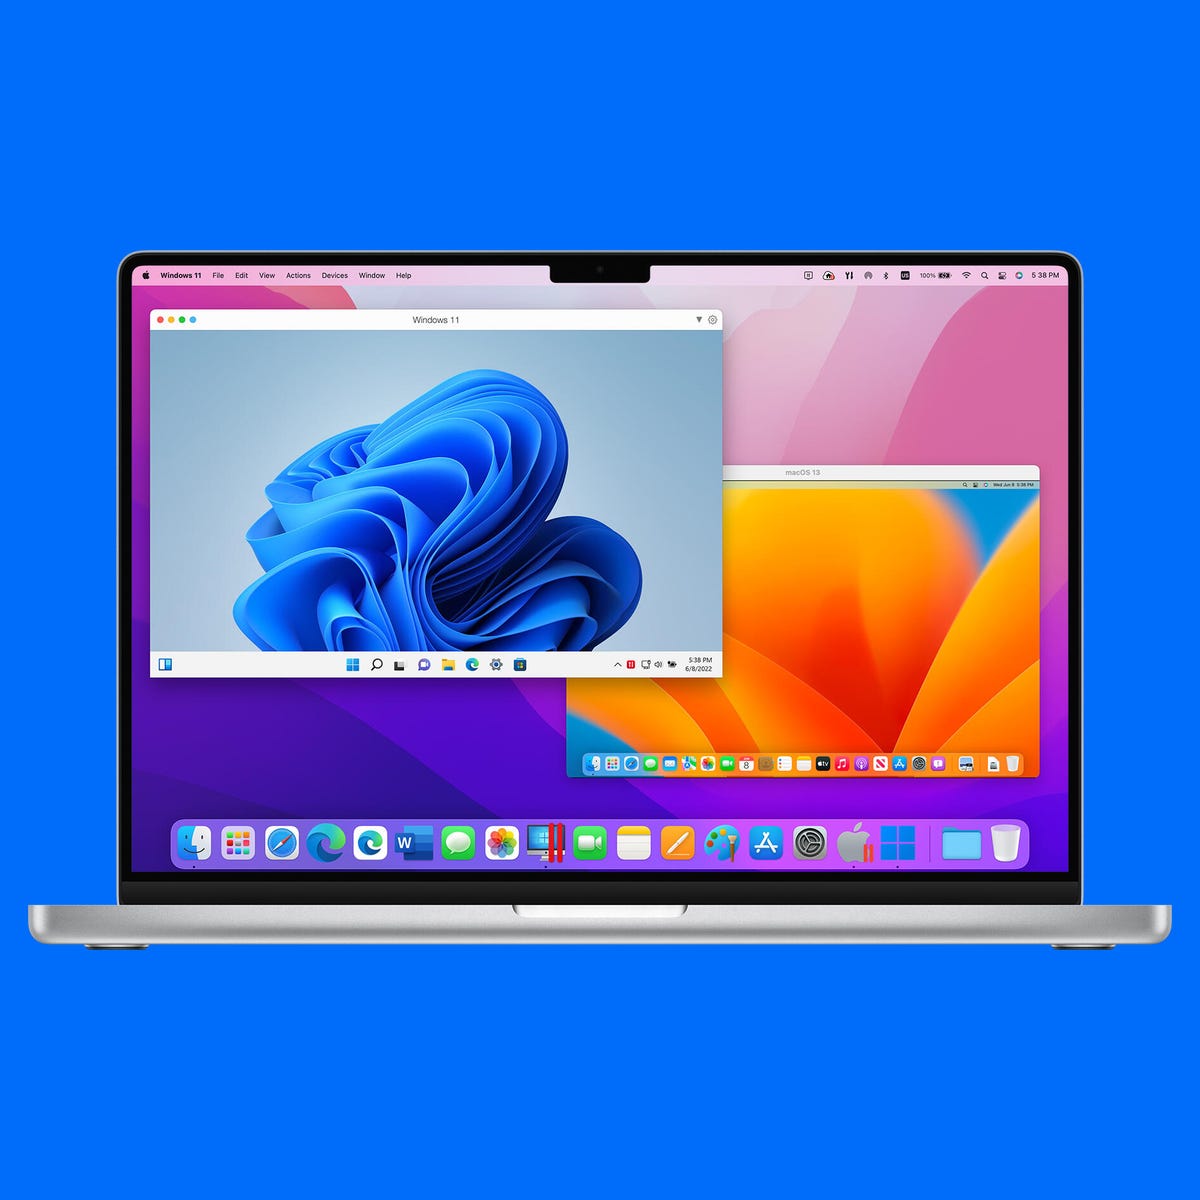 Portræt slids retort Playing PC Games on Mac Should Get Better With Parallels Desktop 18 - CNET